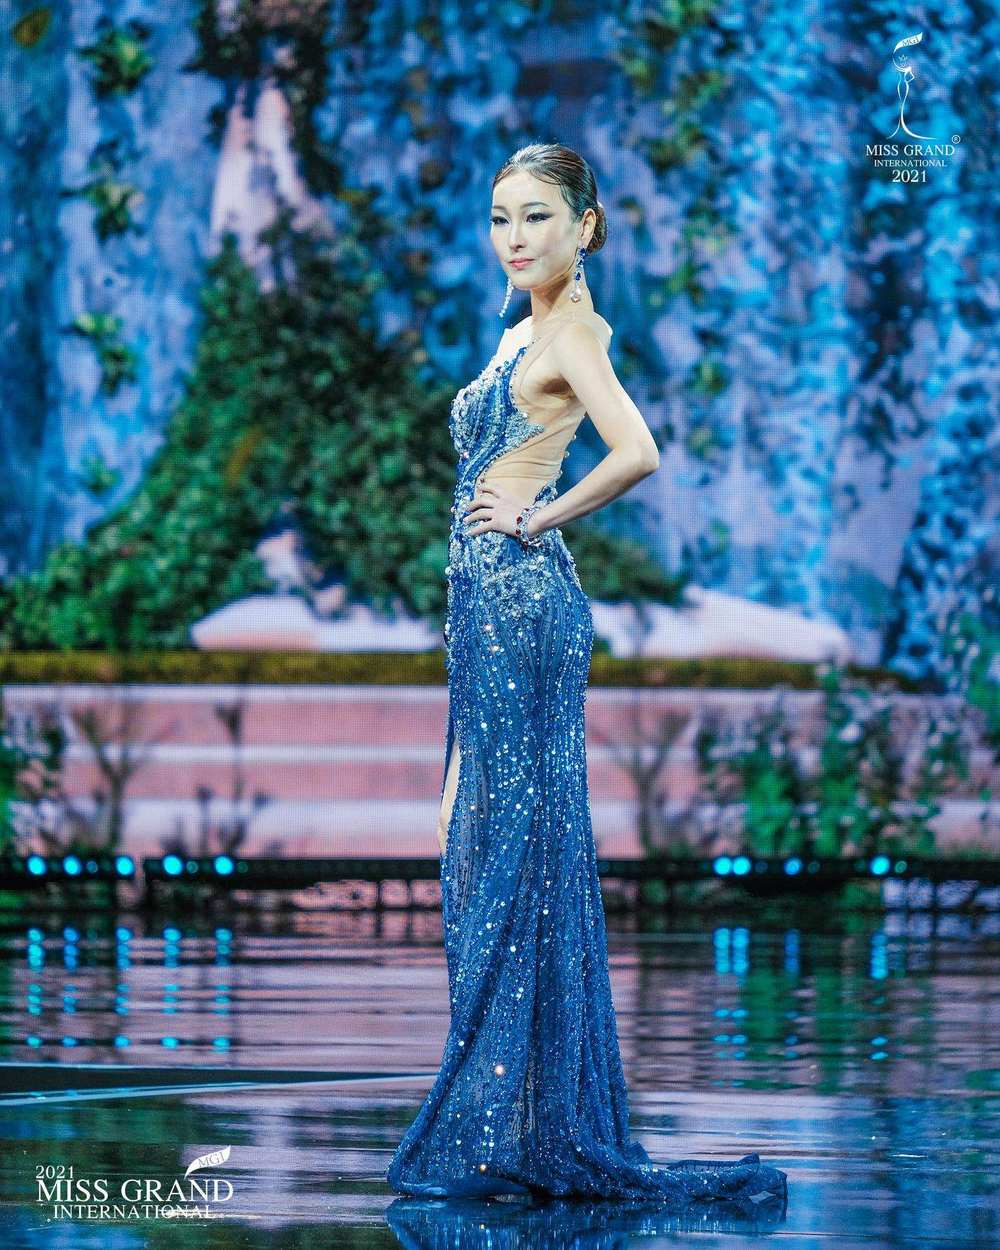  
Sen Yang là một trong những gương mặt được yêu thích nhất cuộc thi. (Ảnh: Facebook Miss Grand International)